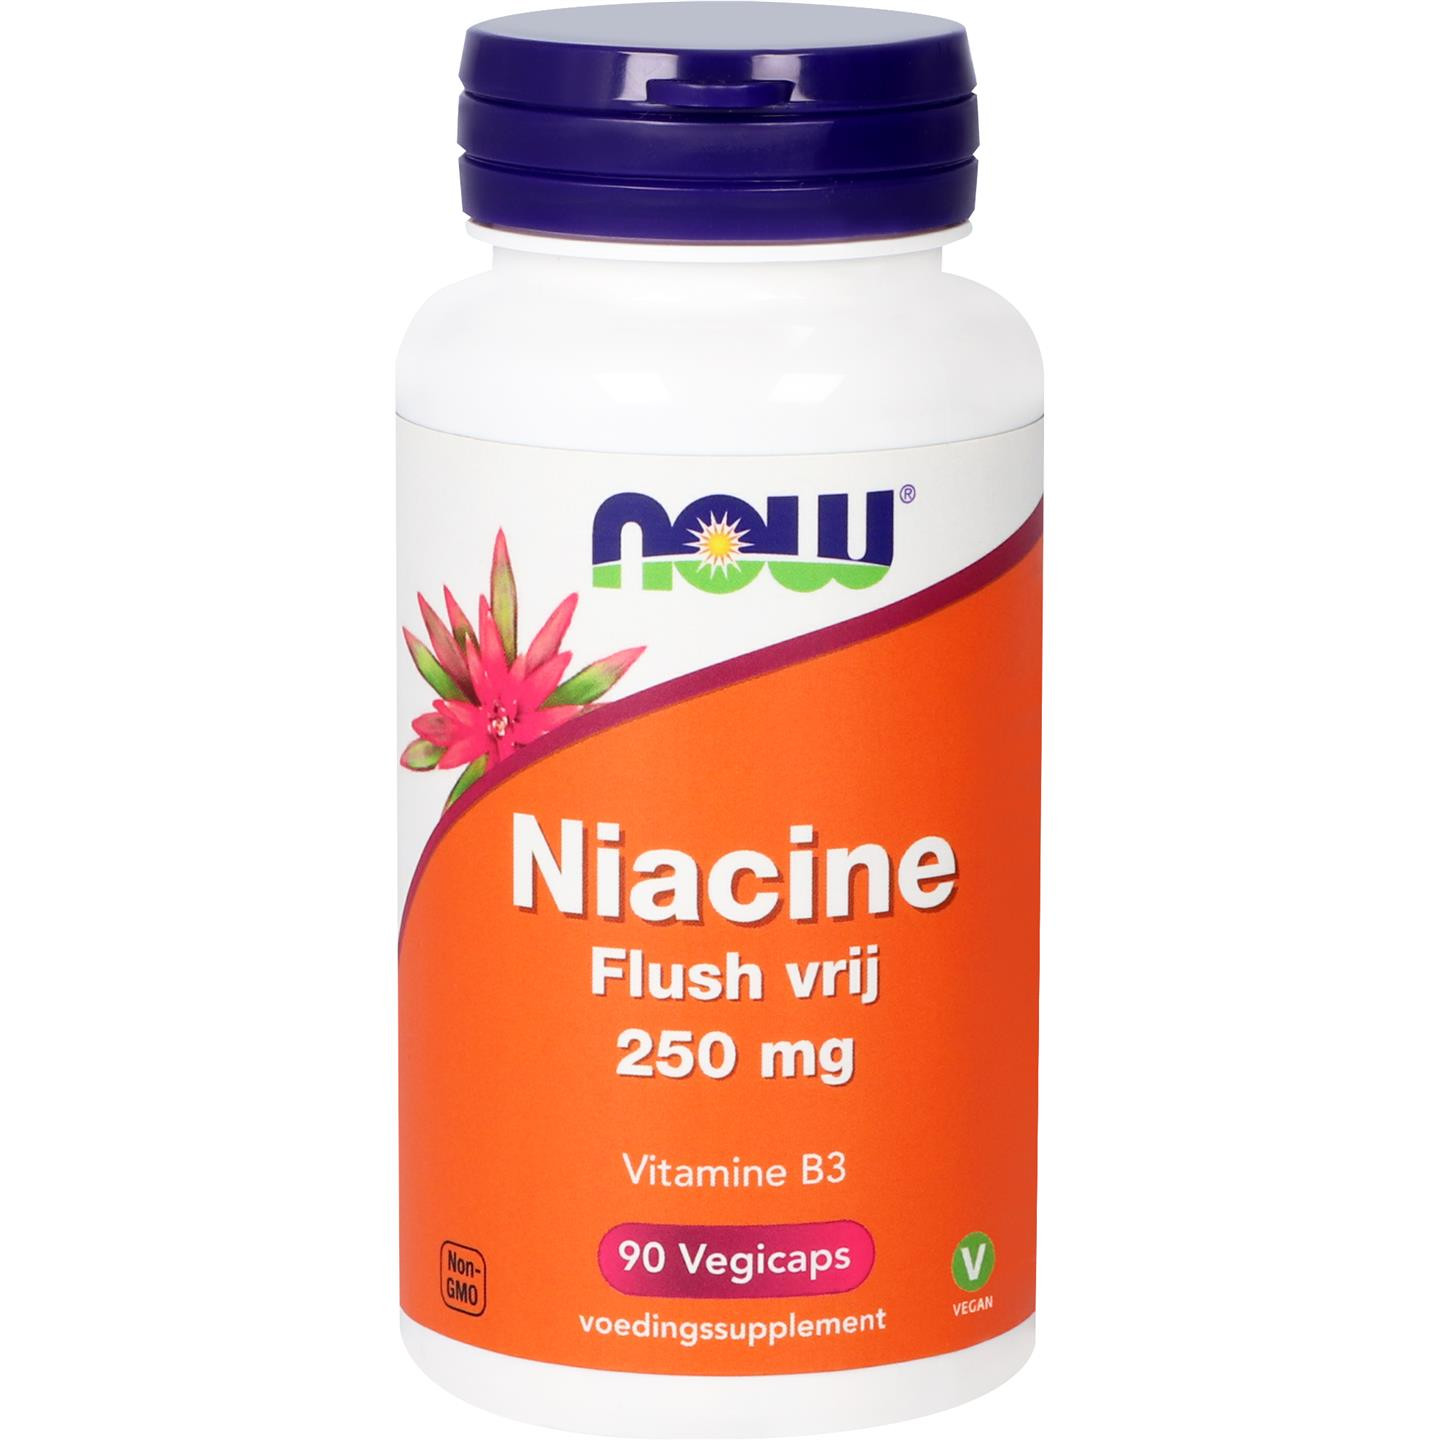 Niacine Flush vrij 250 mg